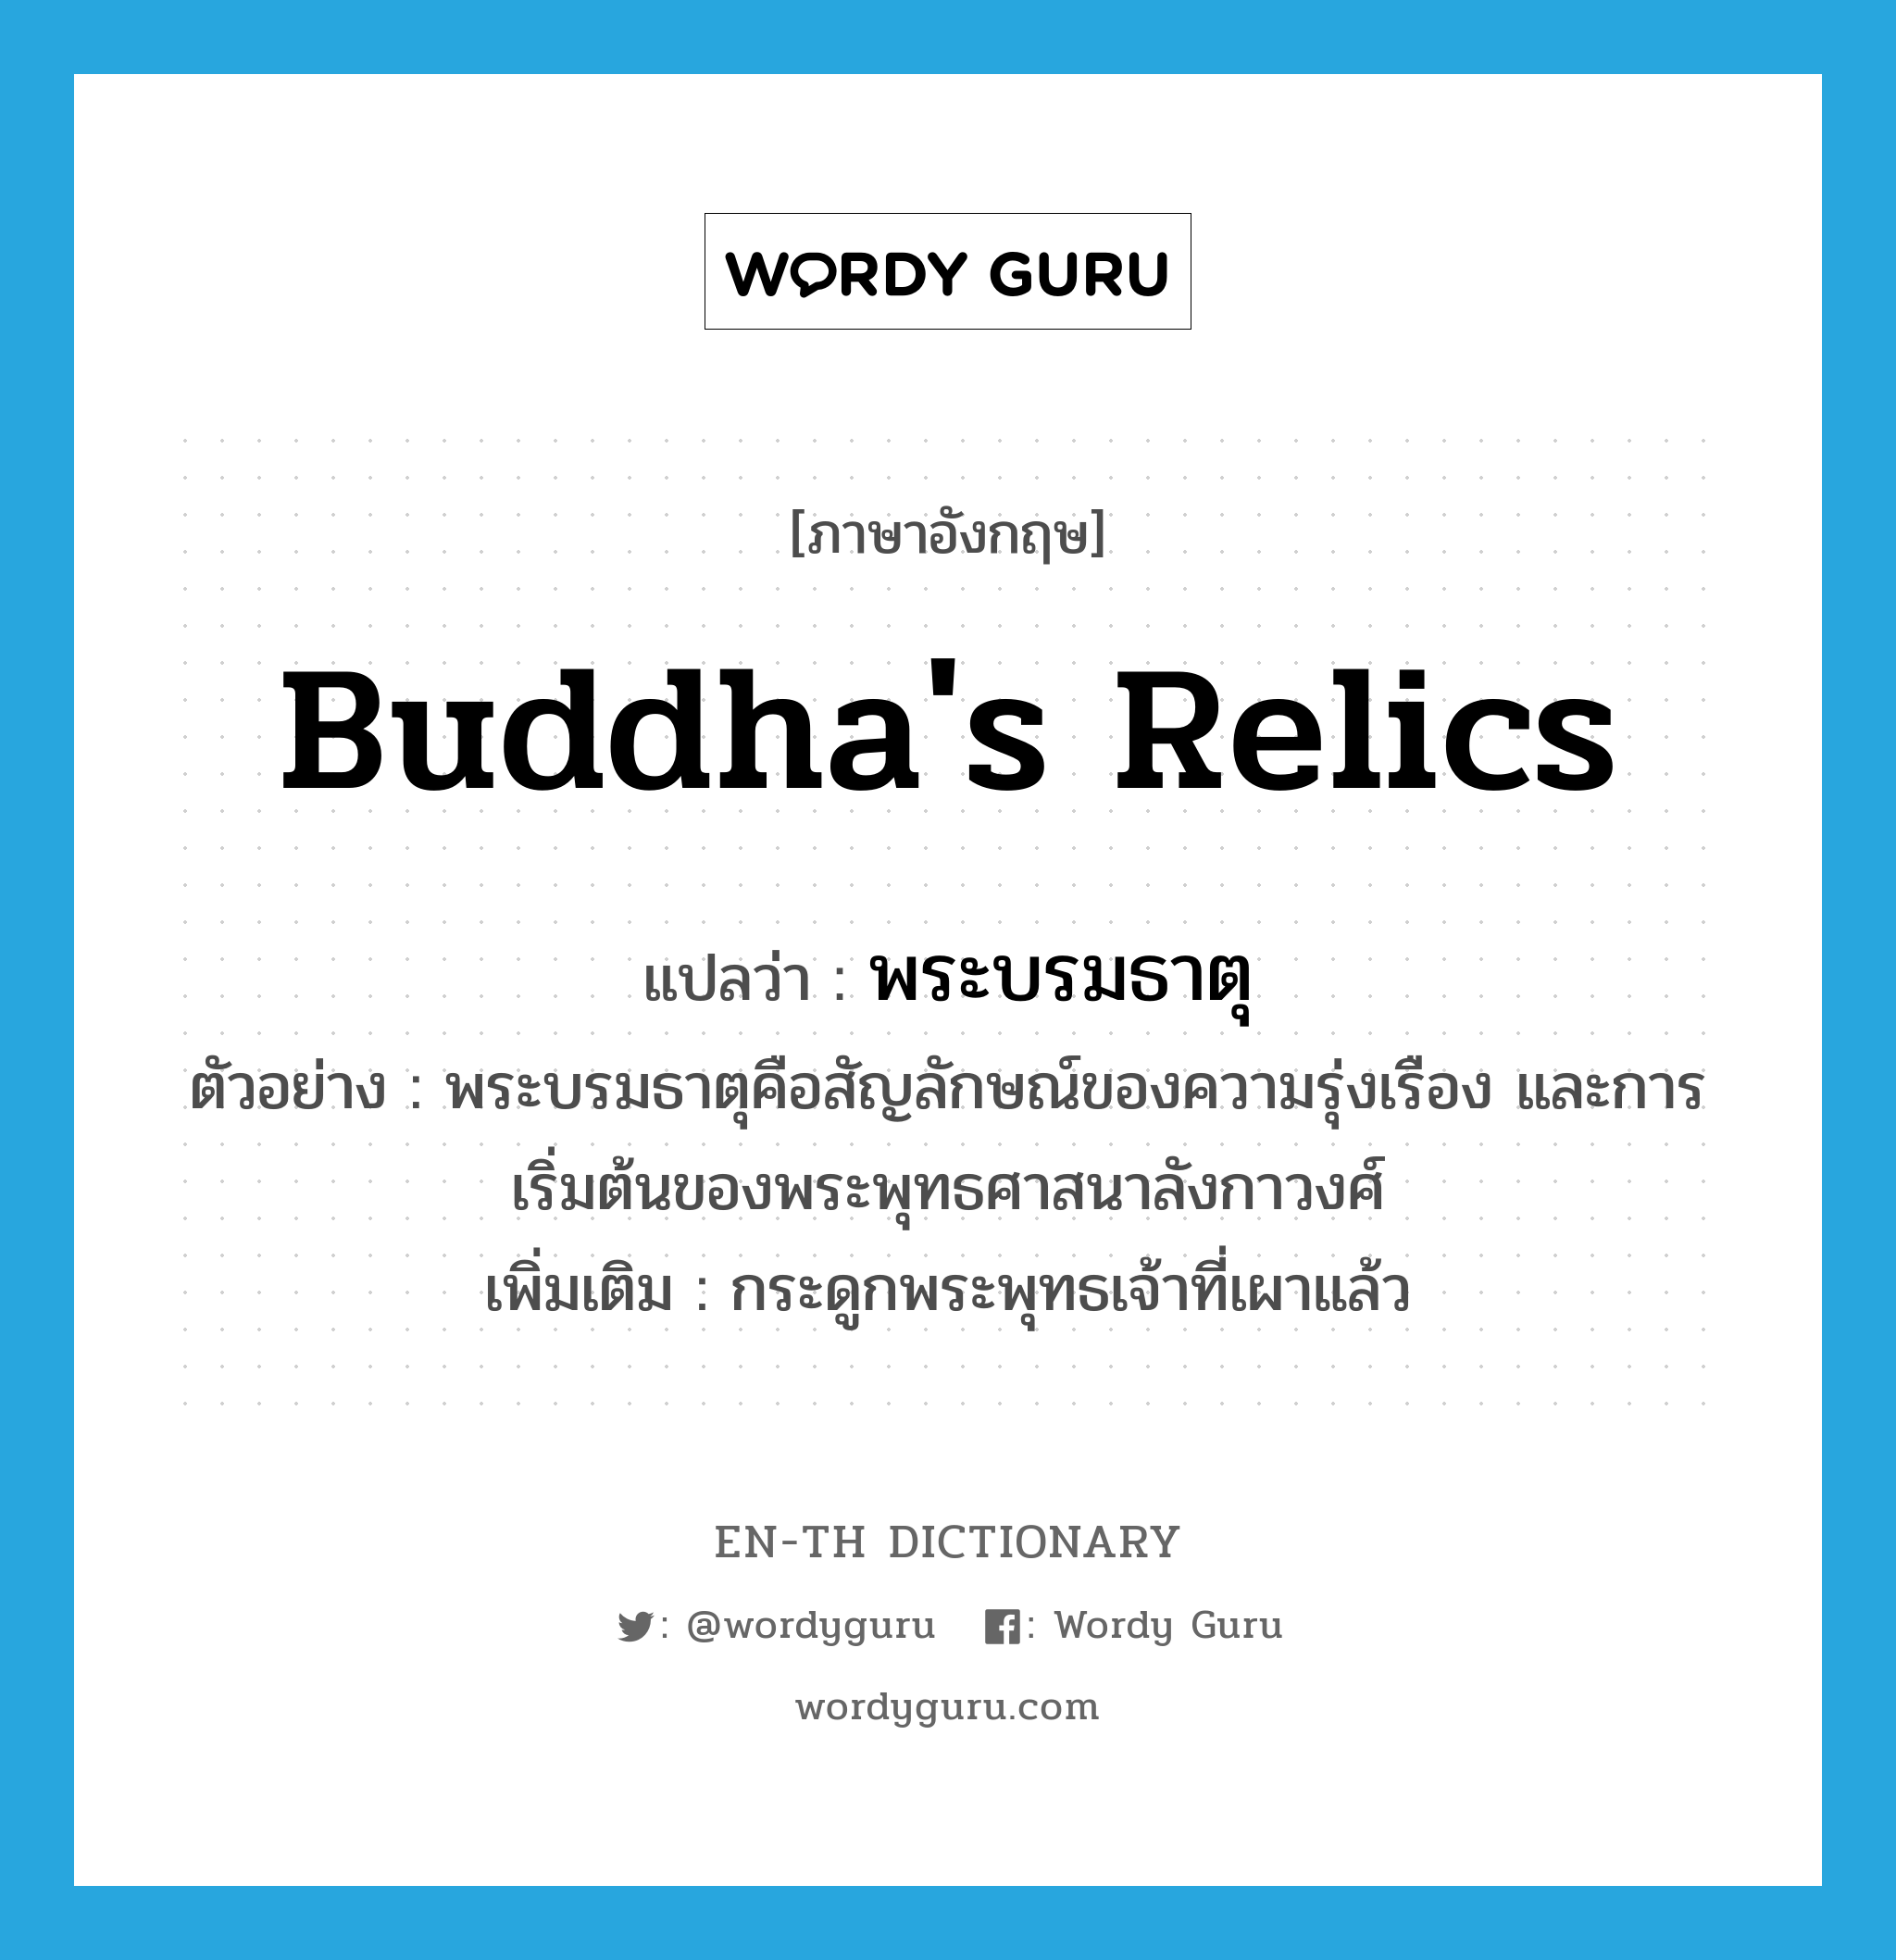 Buddha's relics แปลว่า?, คำศัพท์ภาษาอังกฤษ Buddha's relics แปลว่า พระบรมธาตุ ประเภท N ตัวอย่าง พระบรมธาตุคือสัญลักษณ์ของความรุ่งเรือง และการเริ่มต้นของพระพุทธศาสนาลังกาวงศ์ เพิ่มเติม กระดูกพระพุทธเจ้าที่เผาแล้ว หมวด N